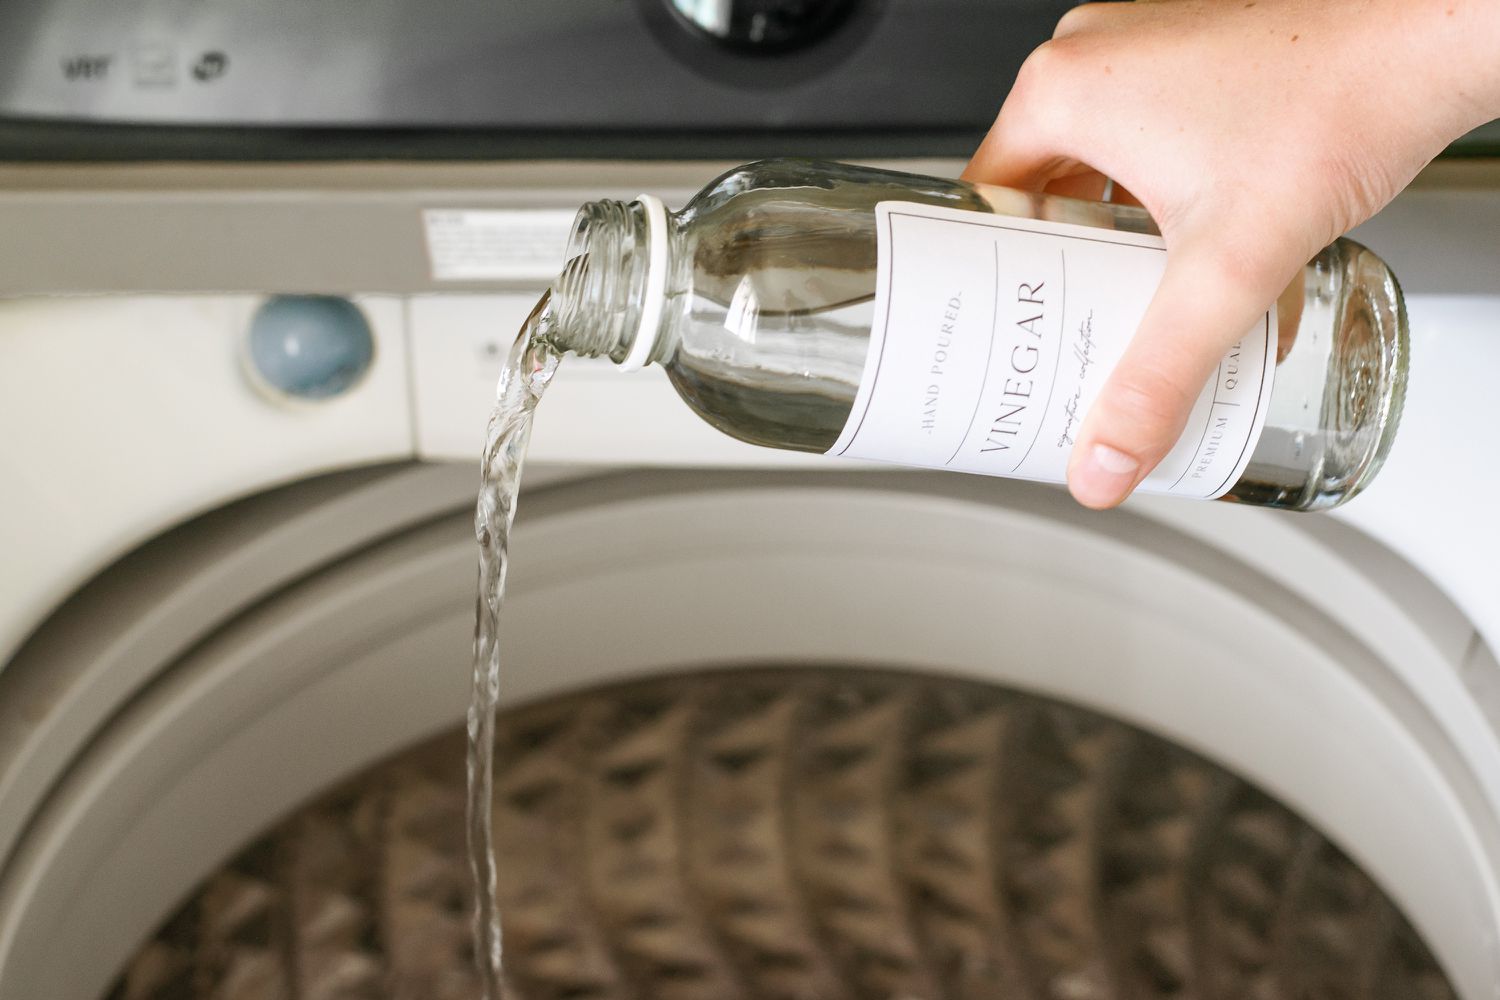 vinagre blanco destilado añadido a la lavadora para el segundo ciclo de lavado de pañales de tela